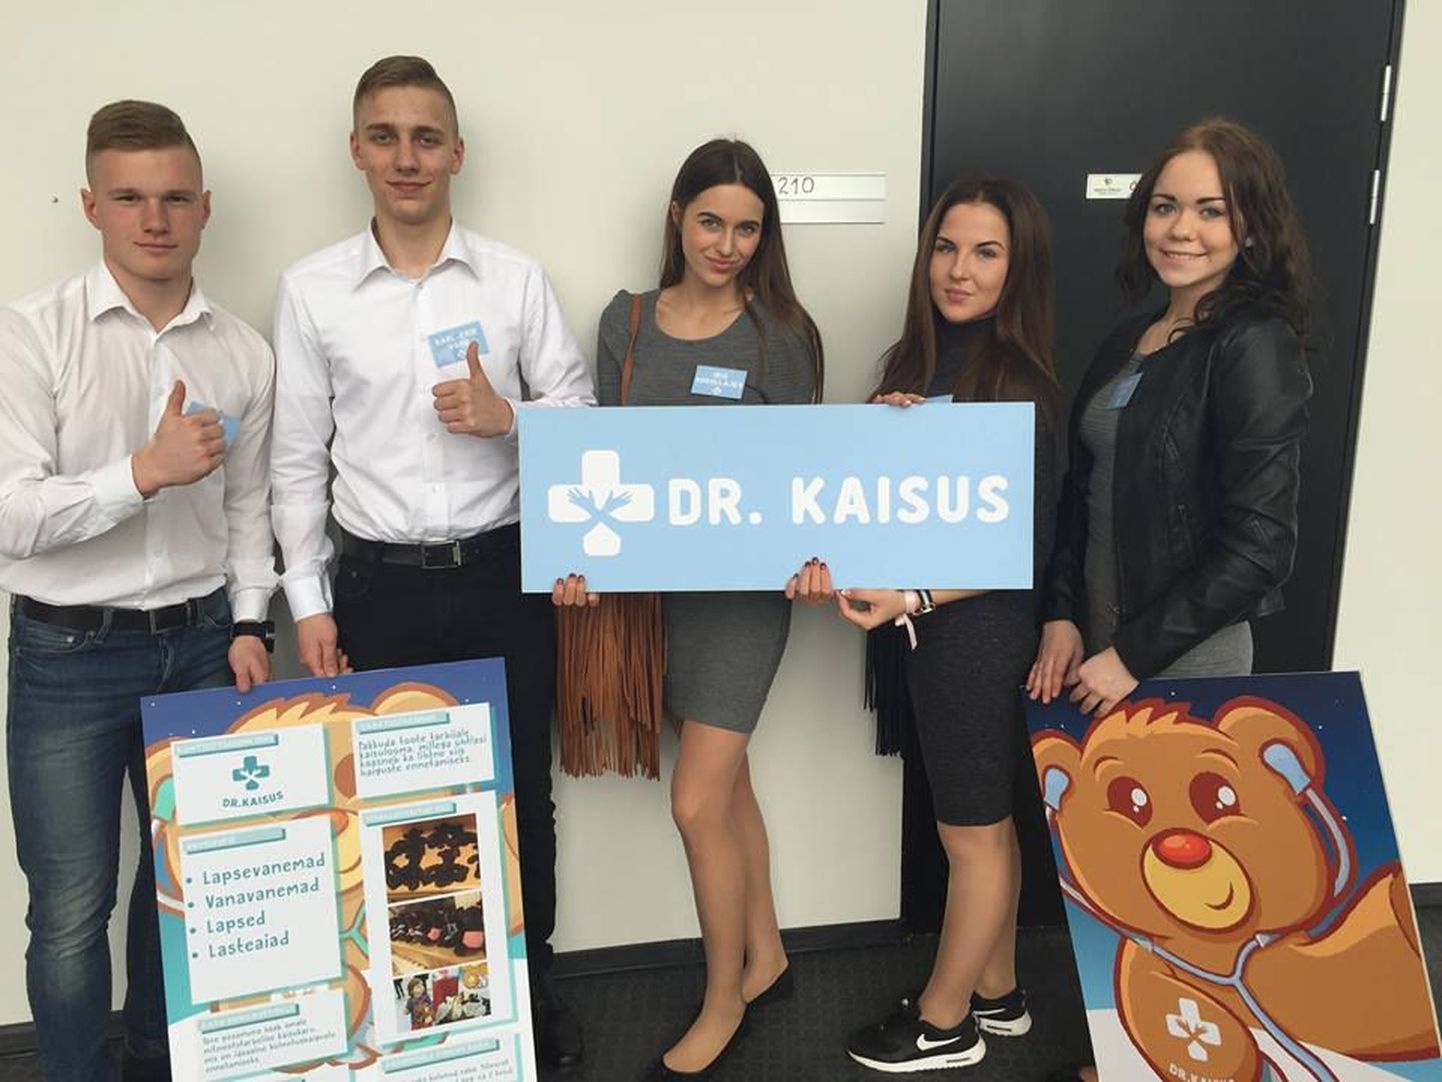 Pärnu ühisgümnaasiumi õpilasfirma Dr Kaisus heitleb Eesti õpilasfirmad võistluse finaalis.